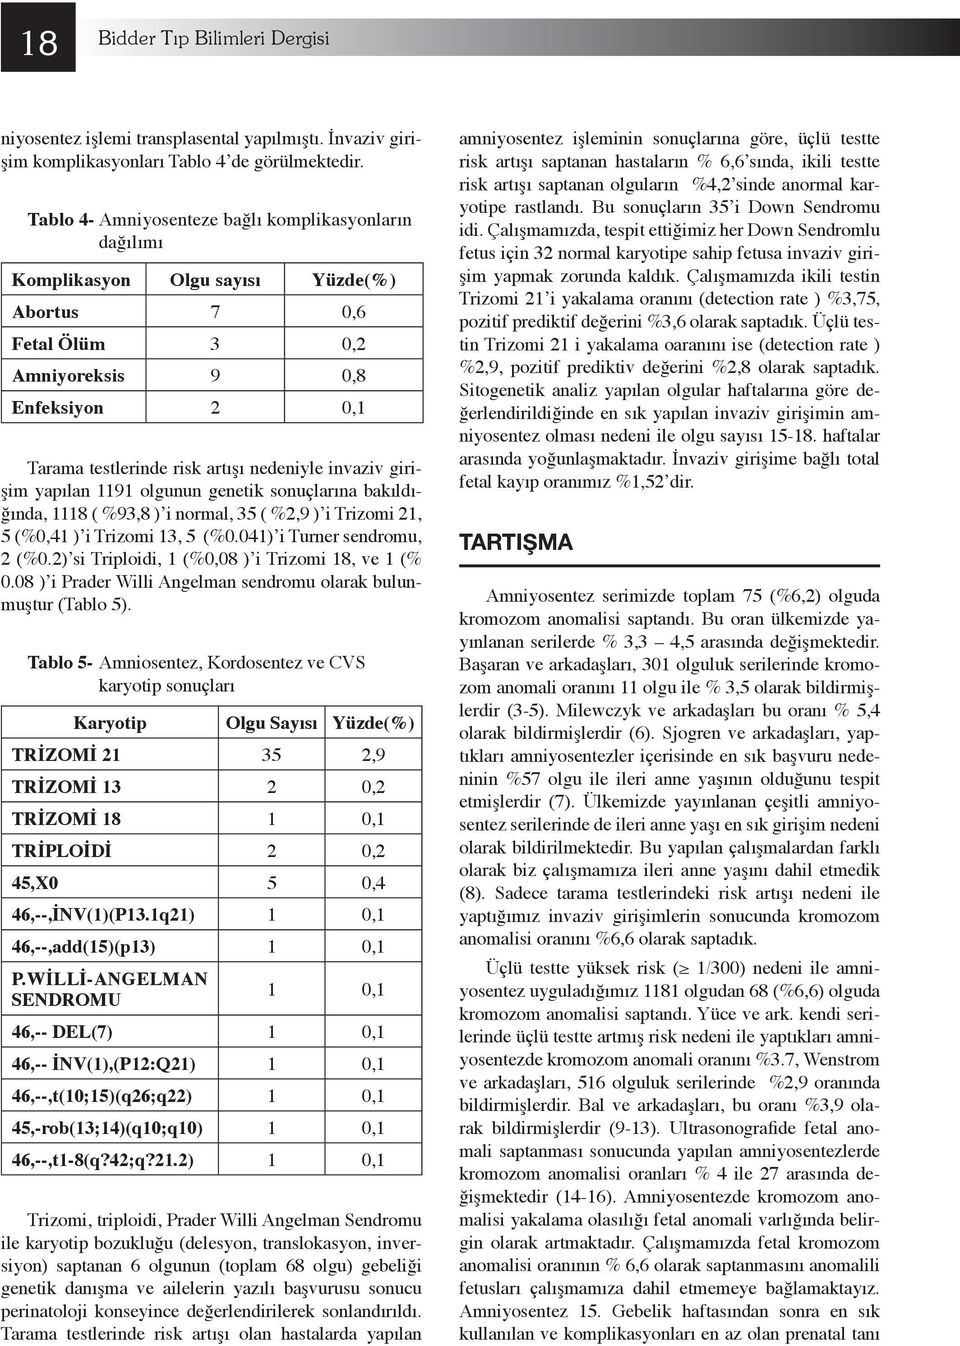 invaziv girişim yapılan 1191 olgunun genetik sonuçlarına bakıldığında, 1118 ( %93,8 ) i normal, 35 ( %2,9 ) i Trizomi 21, 5 (%0,41 ) i Trizomi 13, 5 (%0.041) i Turner sendromu, 2 (%0.